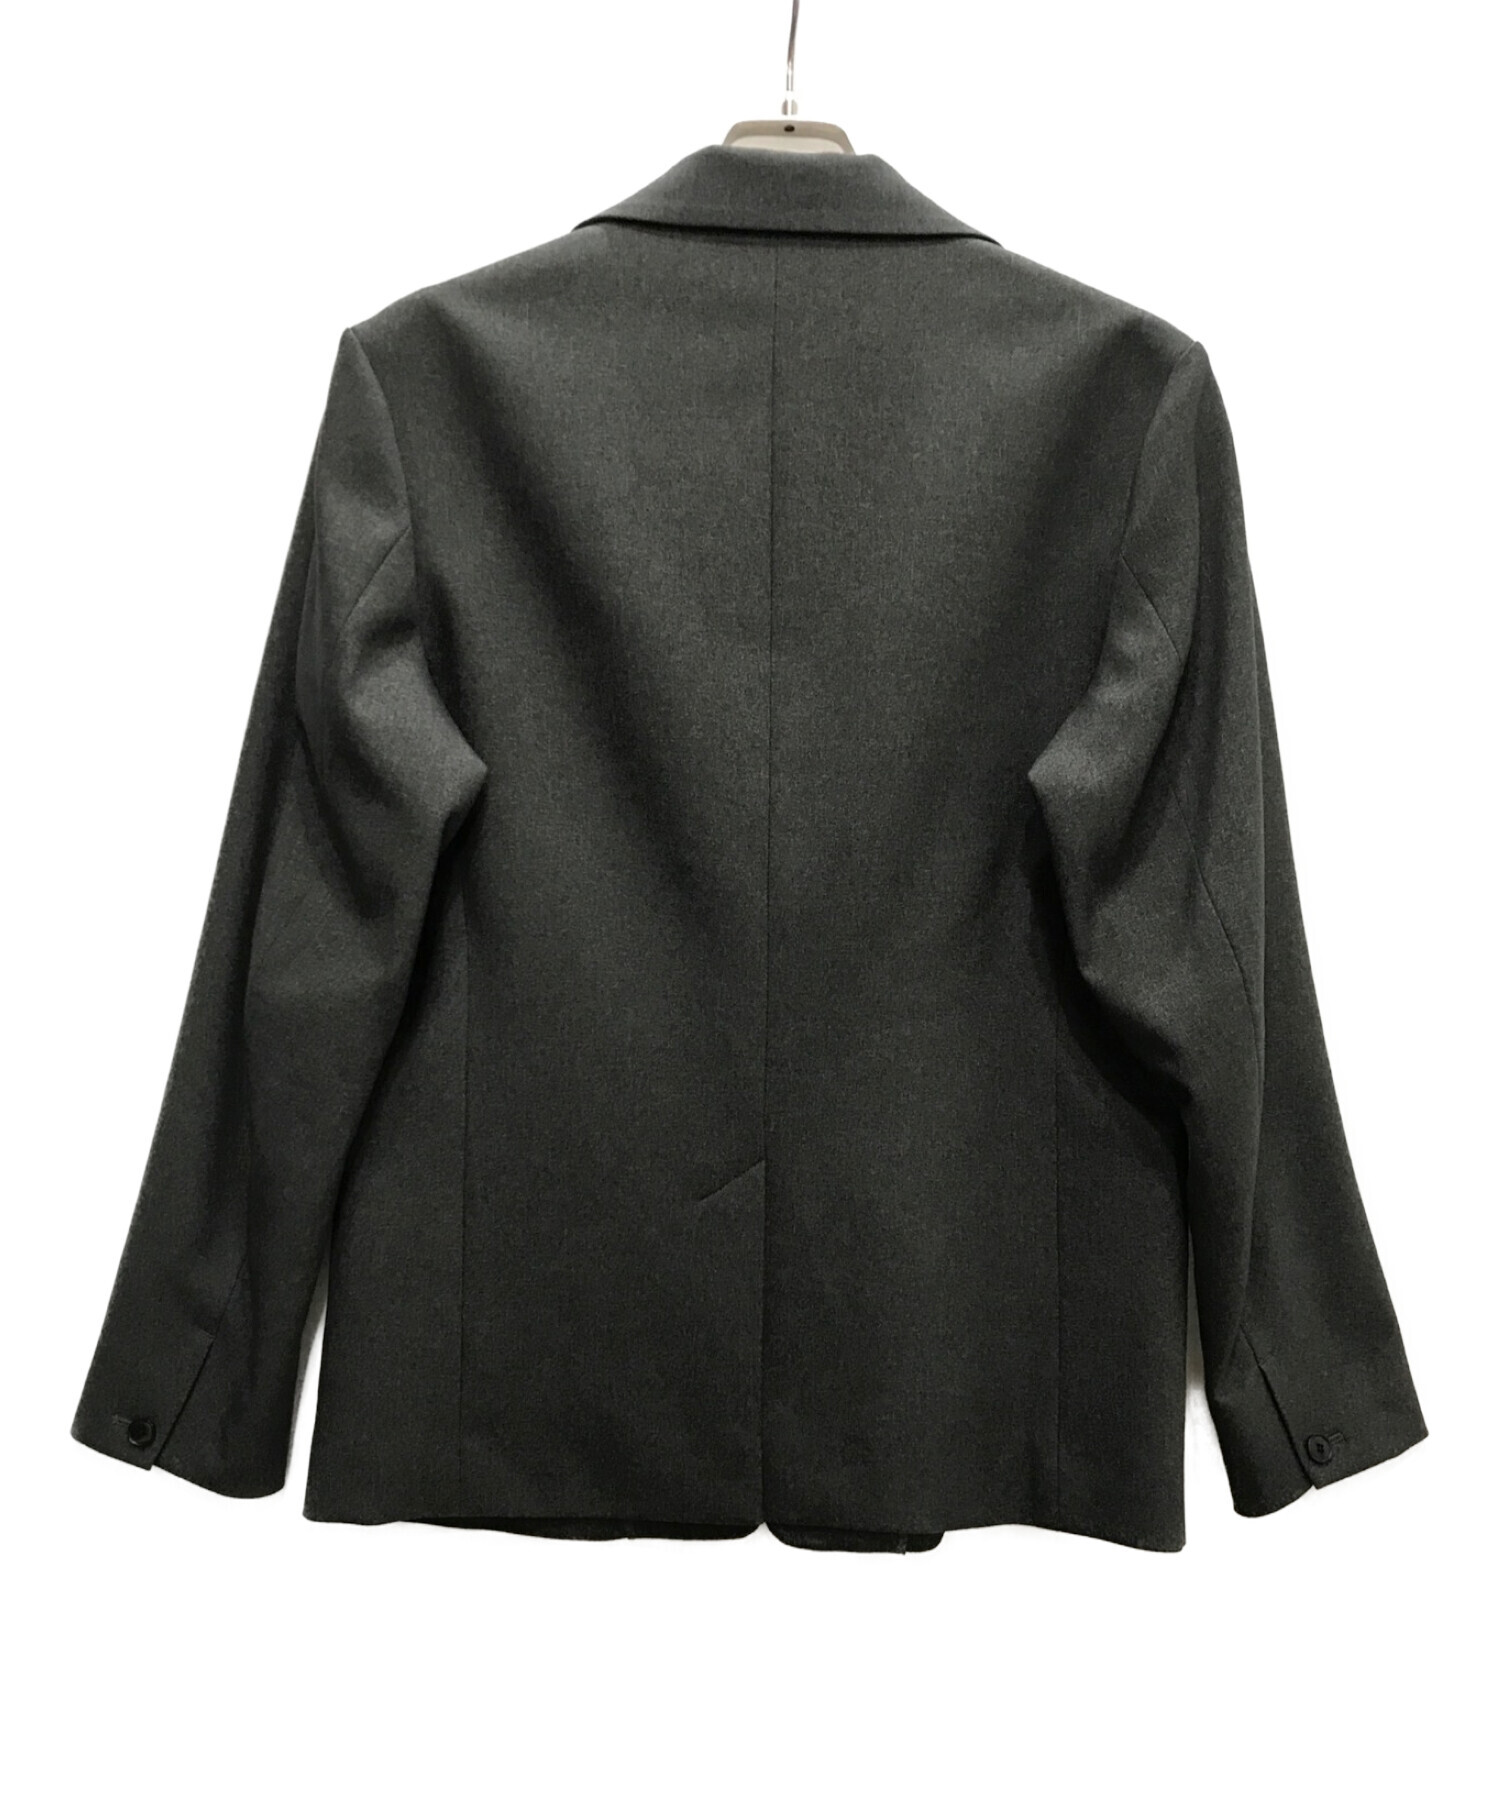 袖丈約56cmpublic tokyo ウールジャケット size 2